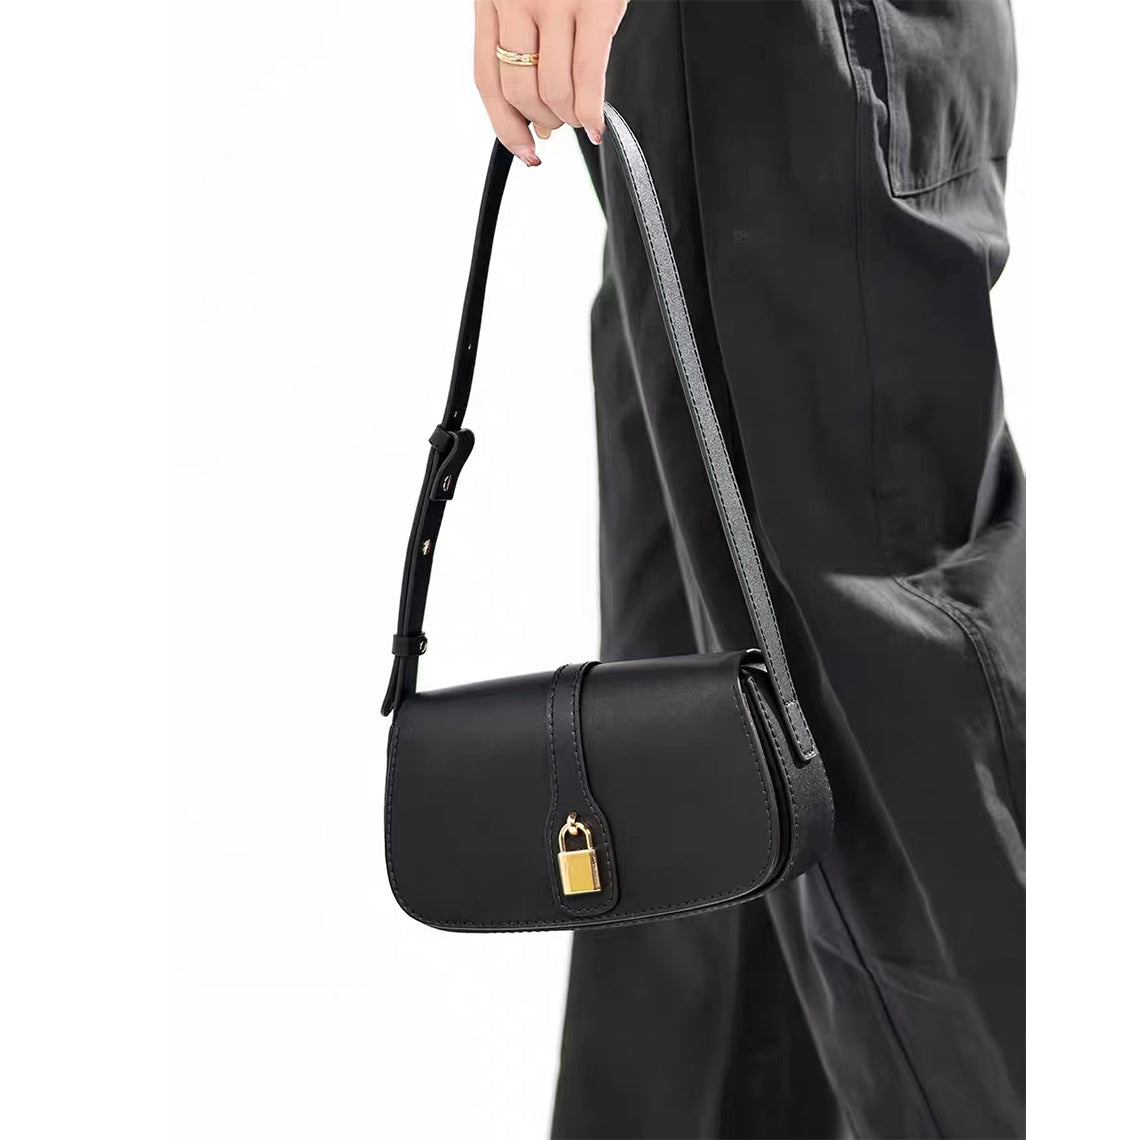 Leather Lady Lock Shoulder Bag DIY Kit